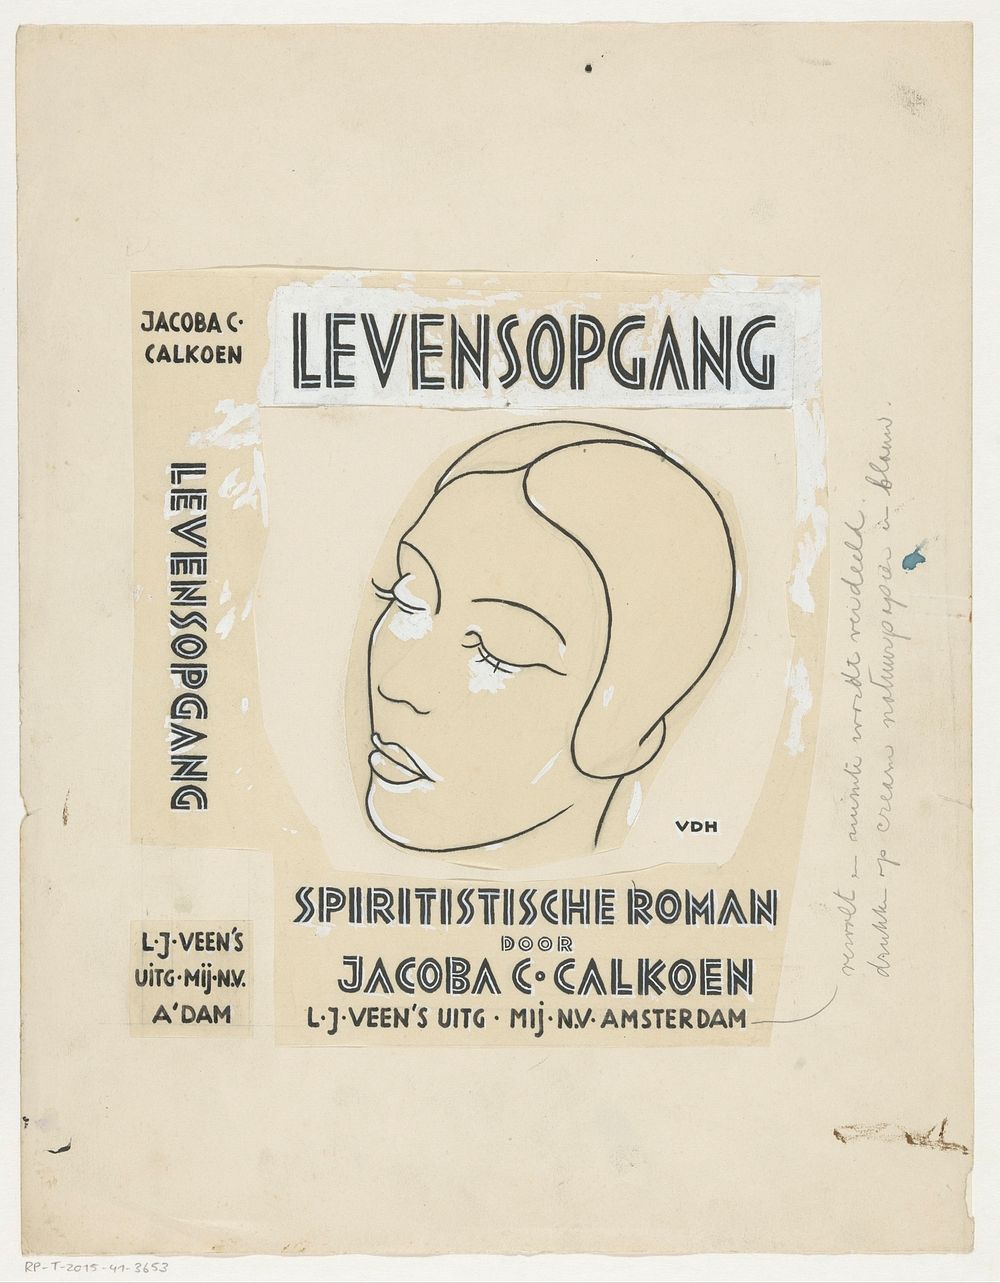 Bandontwerp voor: Jacoba C. Calkoen, Levensopgang. Spiritistische roman, 1933 (in or before 1933)